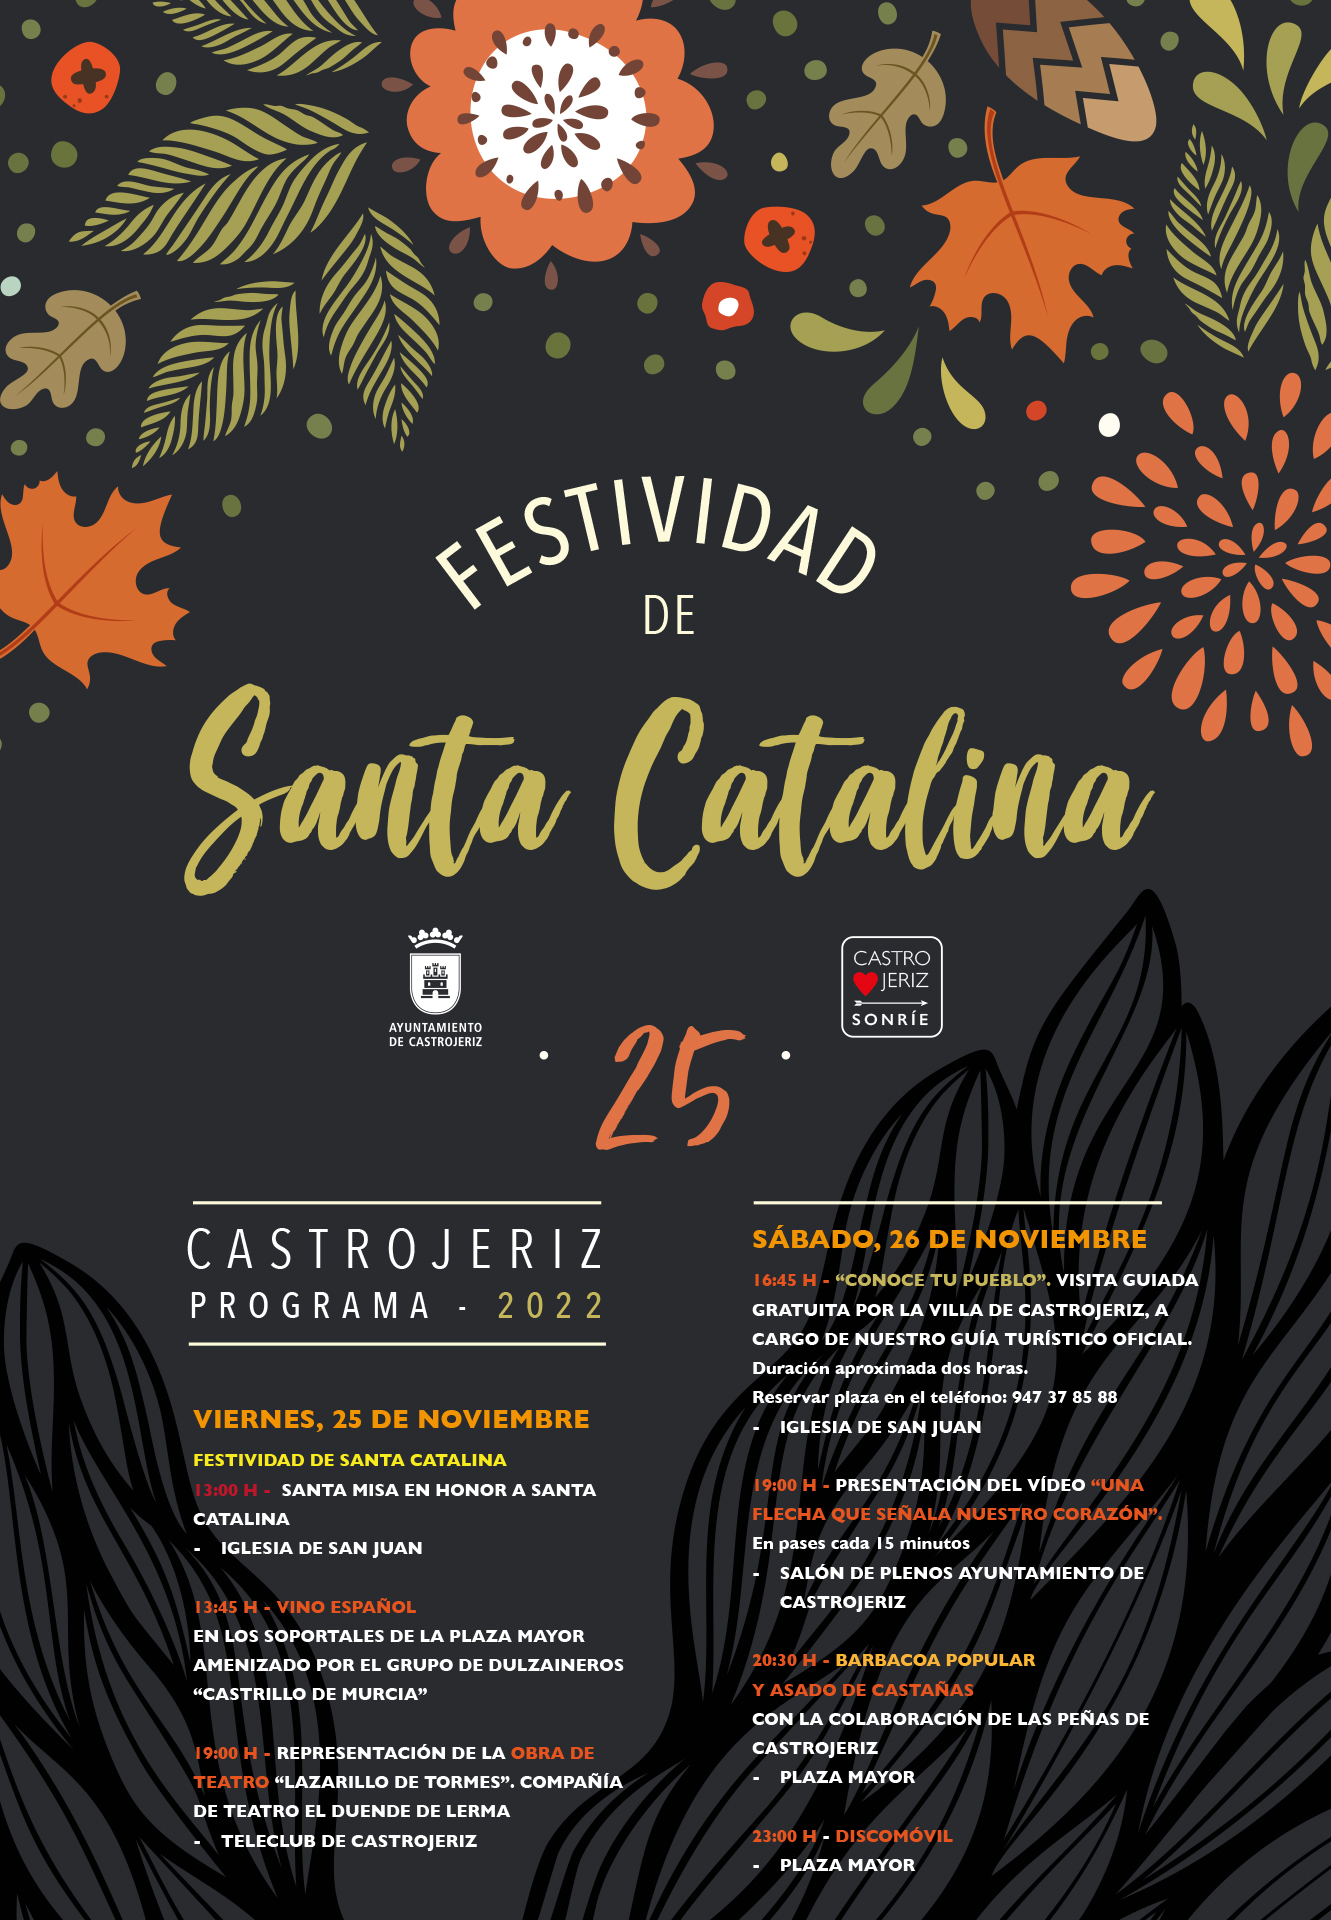 https://www.castrojeriz.es/santa-catalina-2022/